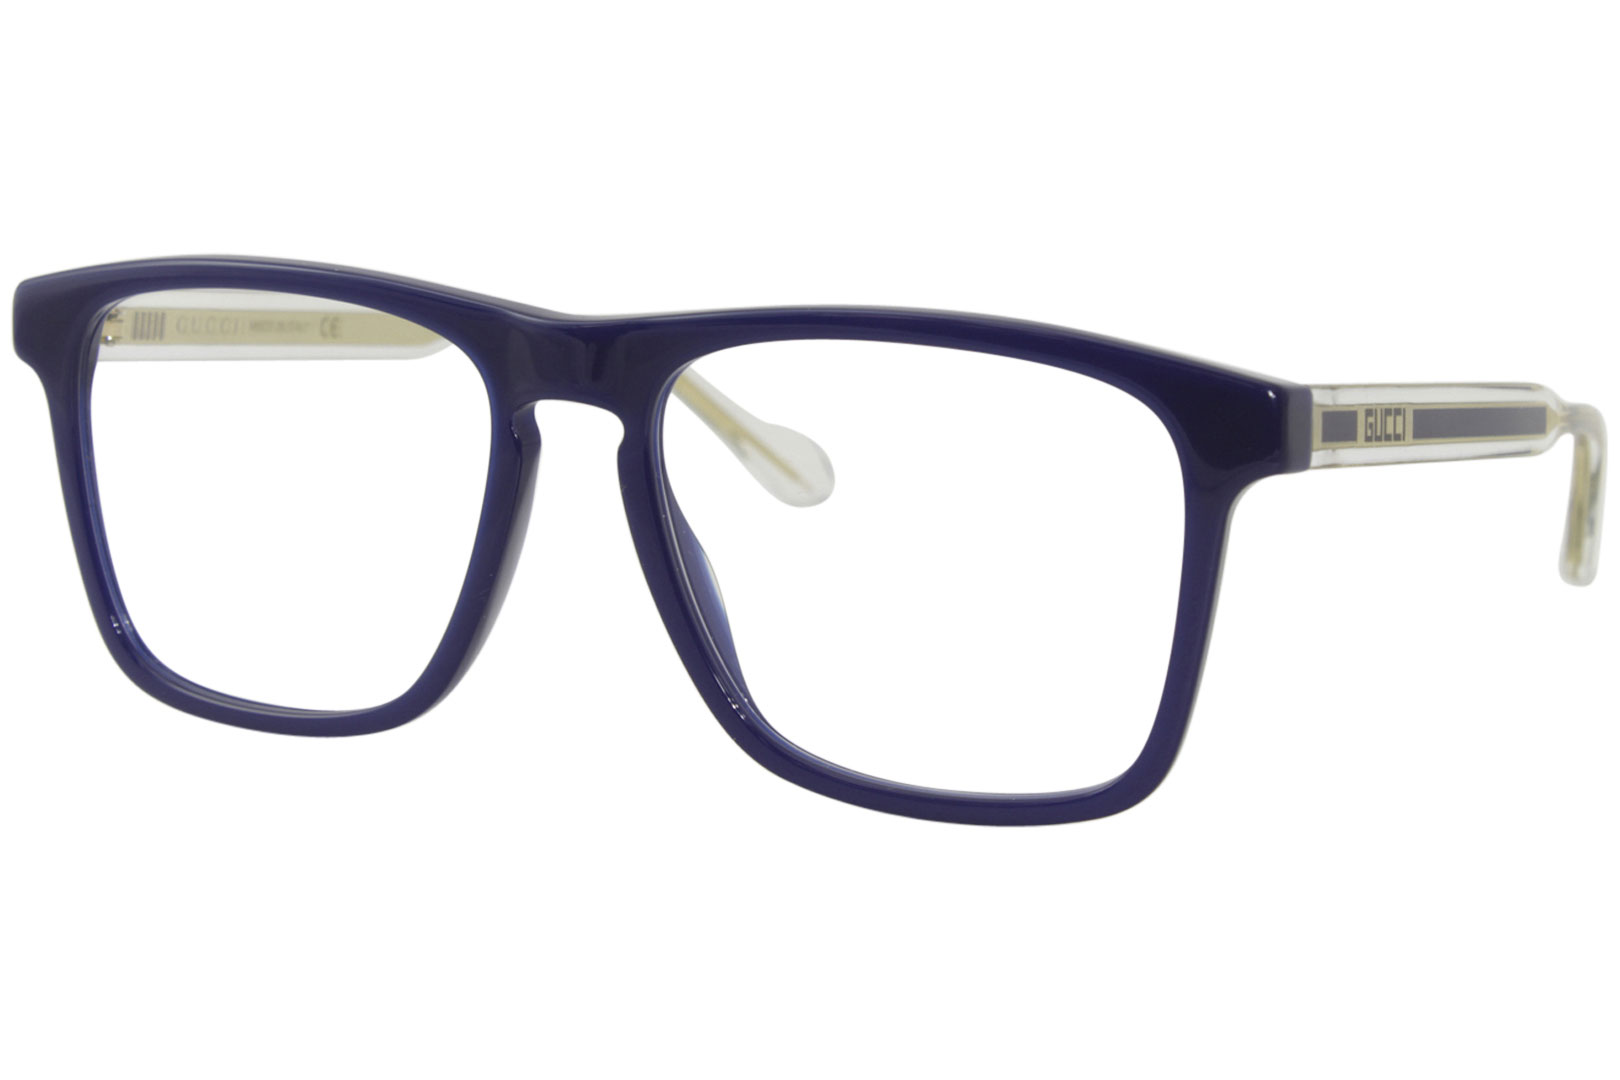 Gucci GG0561O 004 Eyeglasses Men's Blue/Crystal Full Rim Optical Frame ...